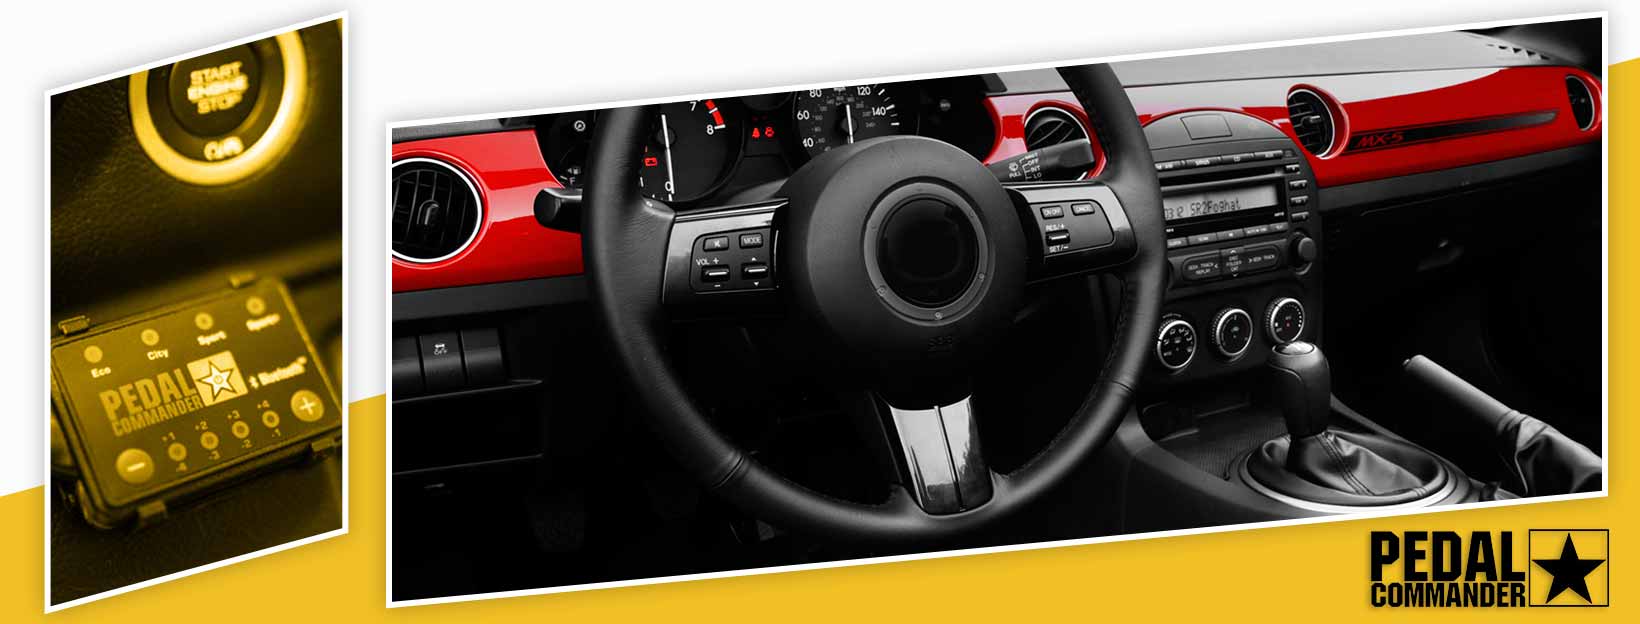 Pedal Commander for Mazda MX5 - interior